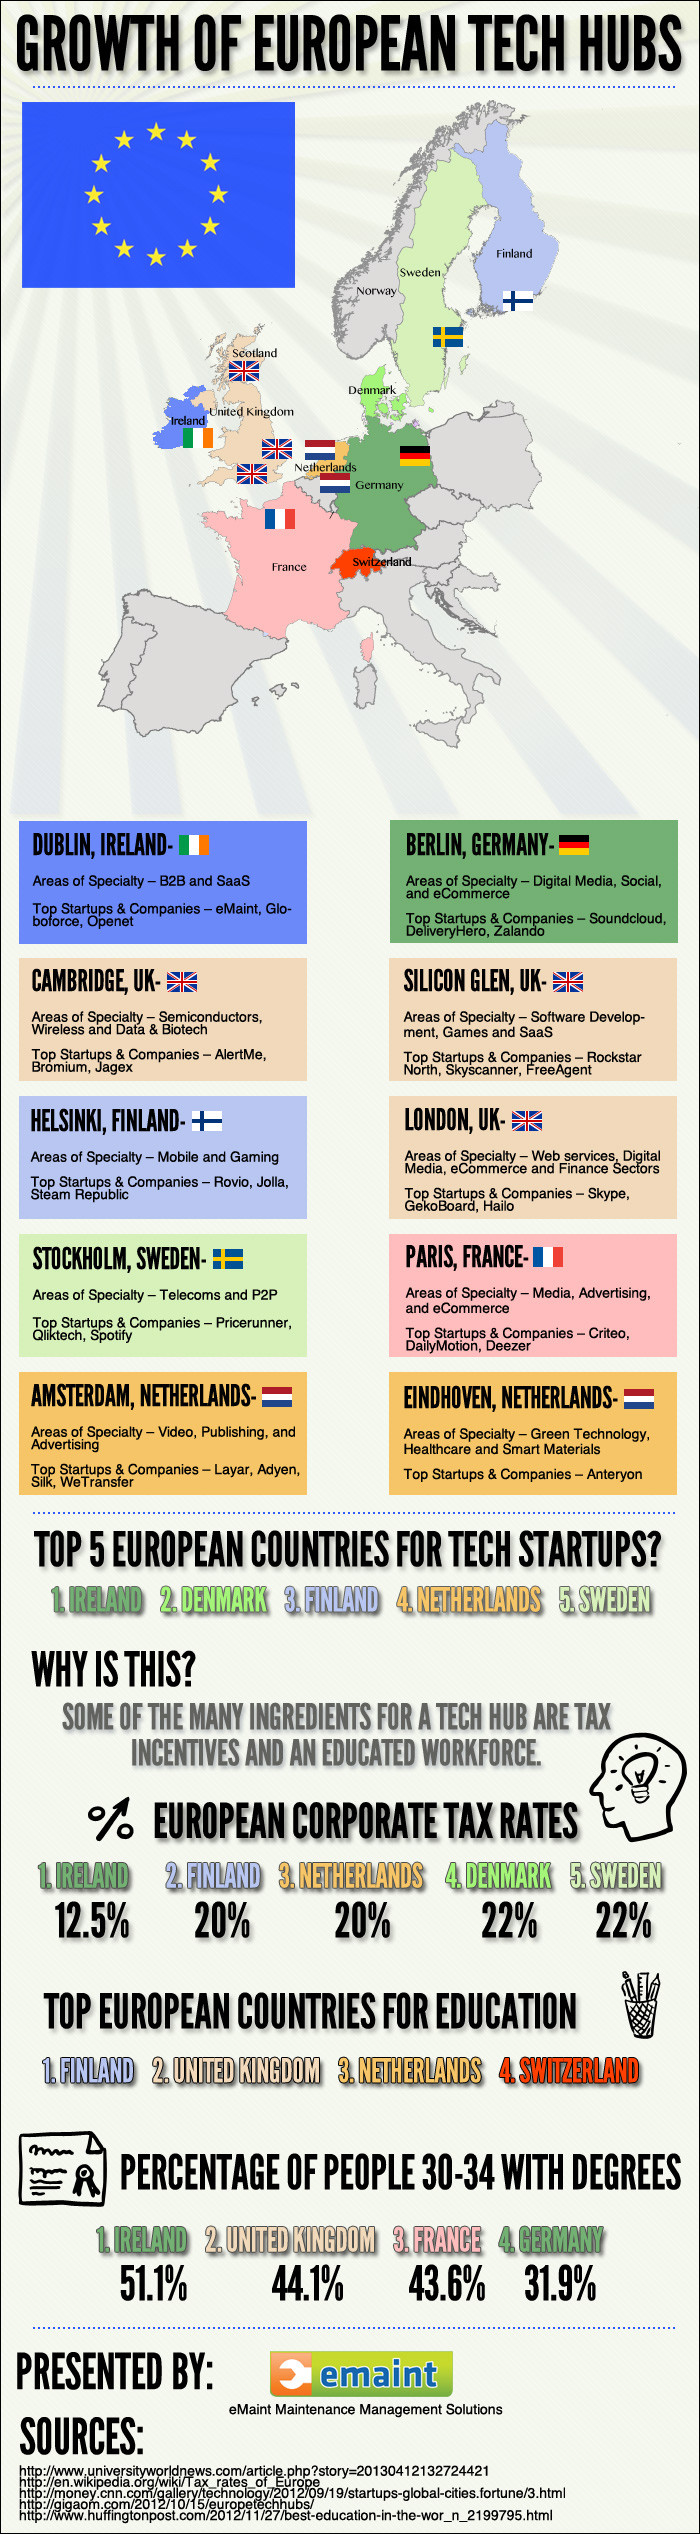 Crescimento da imagem infográfica dos Tech Hubs europeus